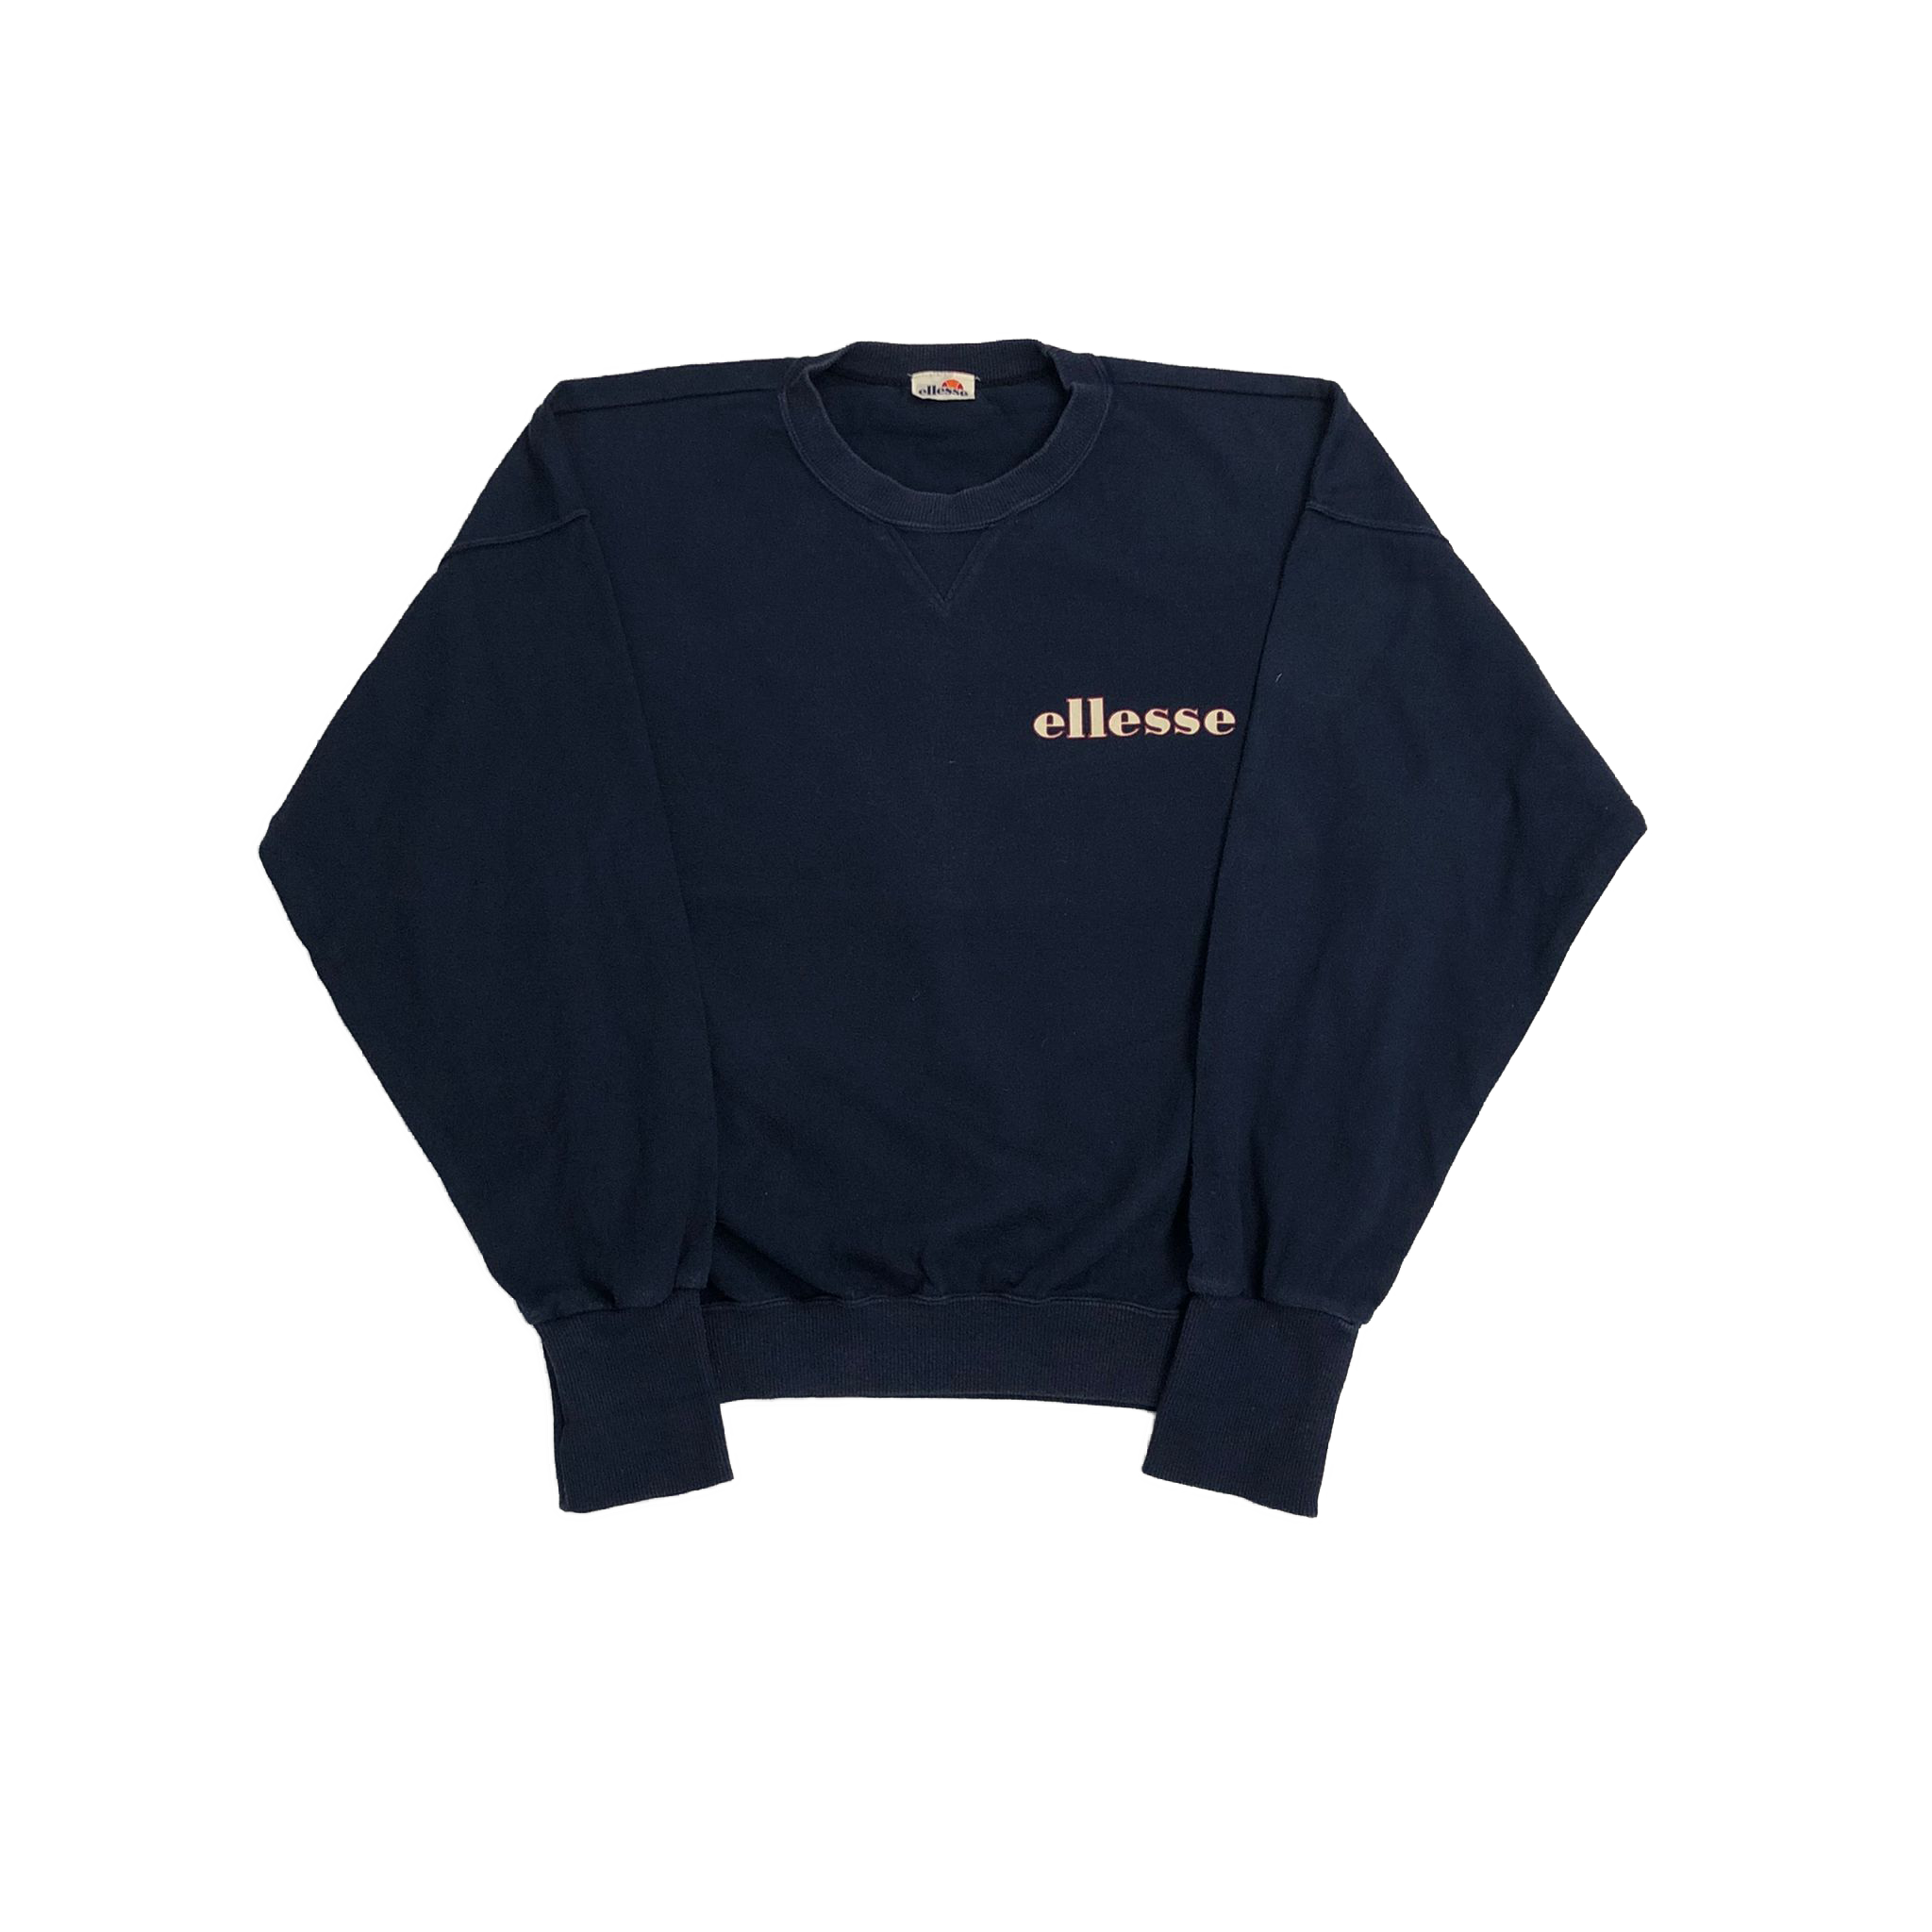 90's Ellesse sweatshirt